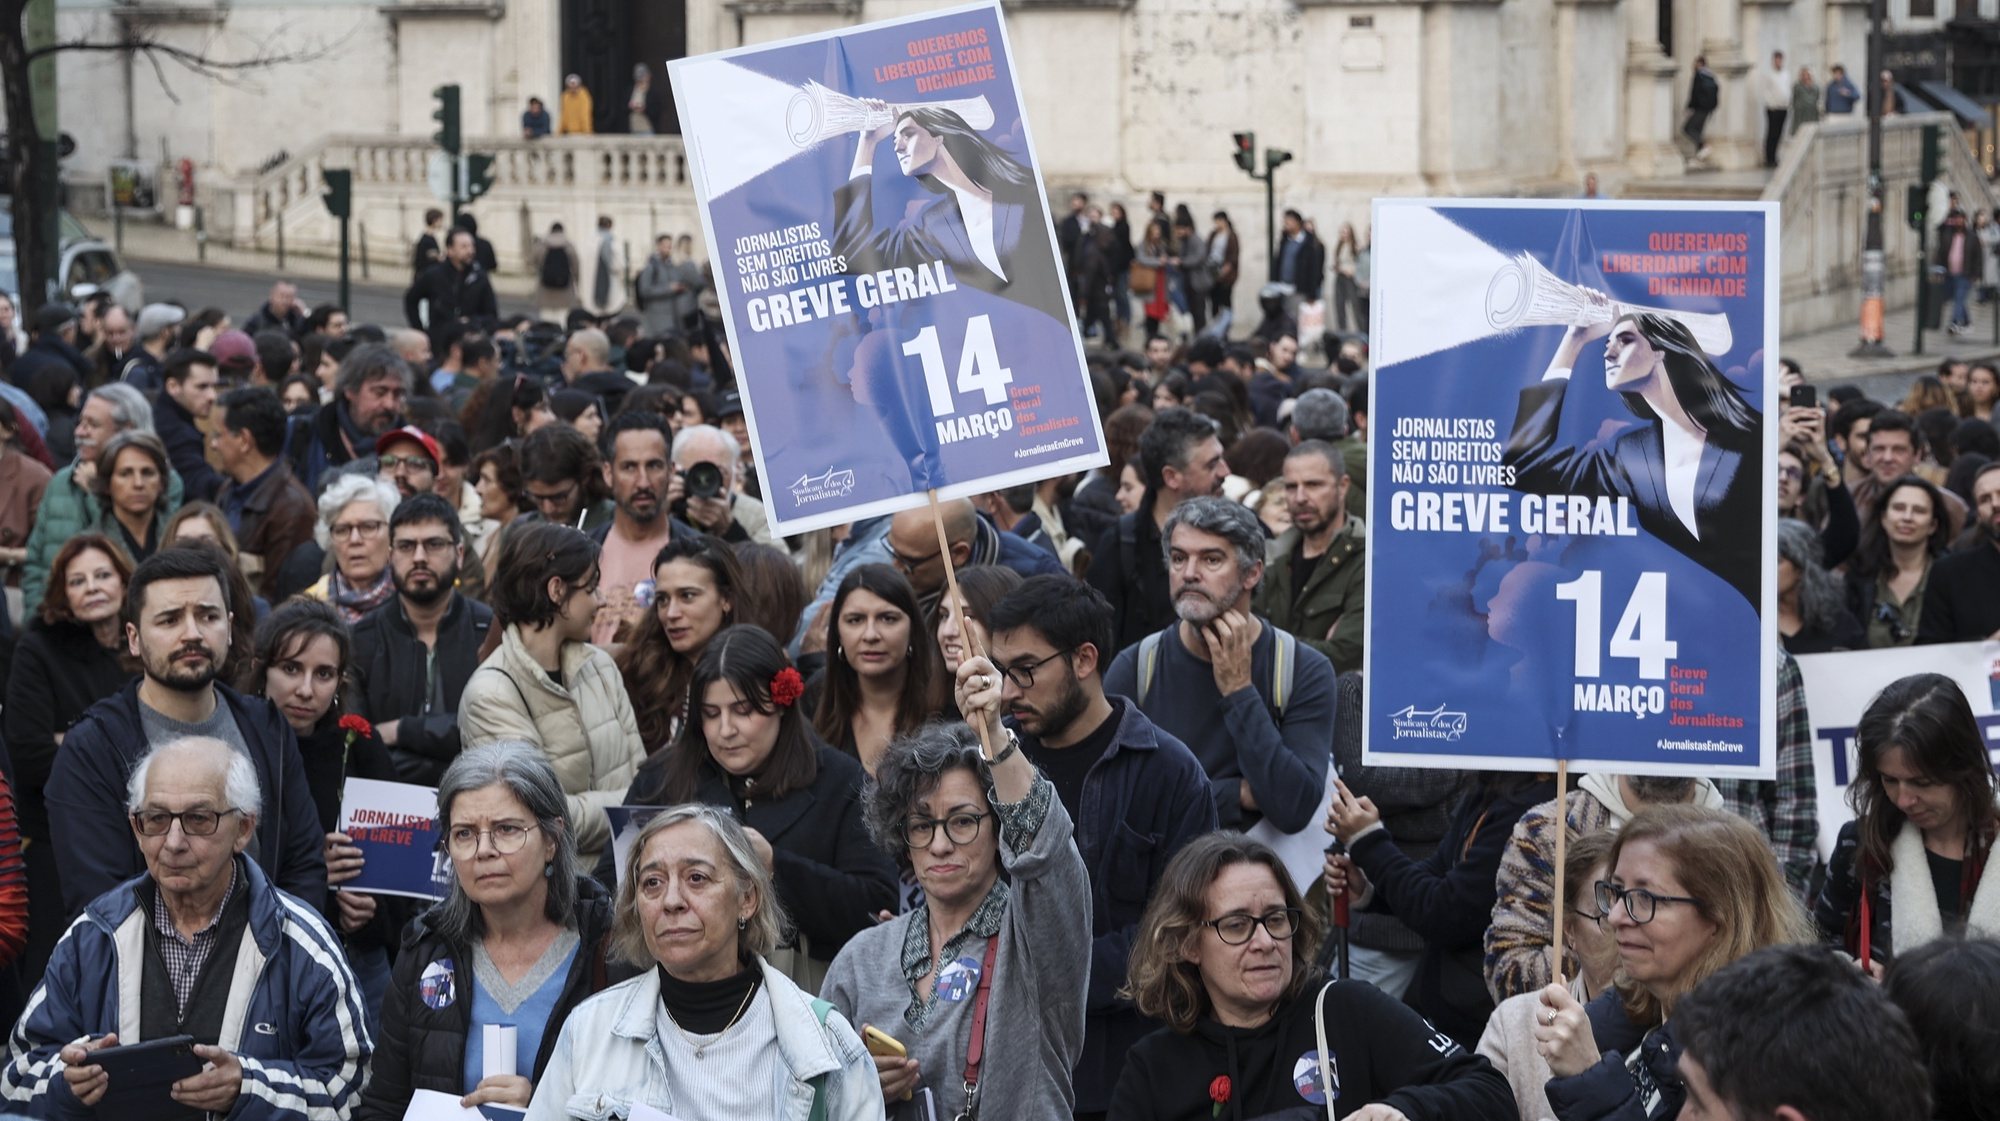 Jornalistas de vários órgãos de comunicação social protestam no Largo do Camões, em Lisboa, 14 de março de 2024. O Sindicato dos Jornalistas (SJ) agendou uma greve geral para este dia, a primeira em mais de 40 anos (a última foi em 1982), contra os baixos salários, precariedade e degradação das condições de trabalho do setor. CARLOS M. ALMEIDA/LUSA